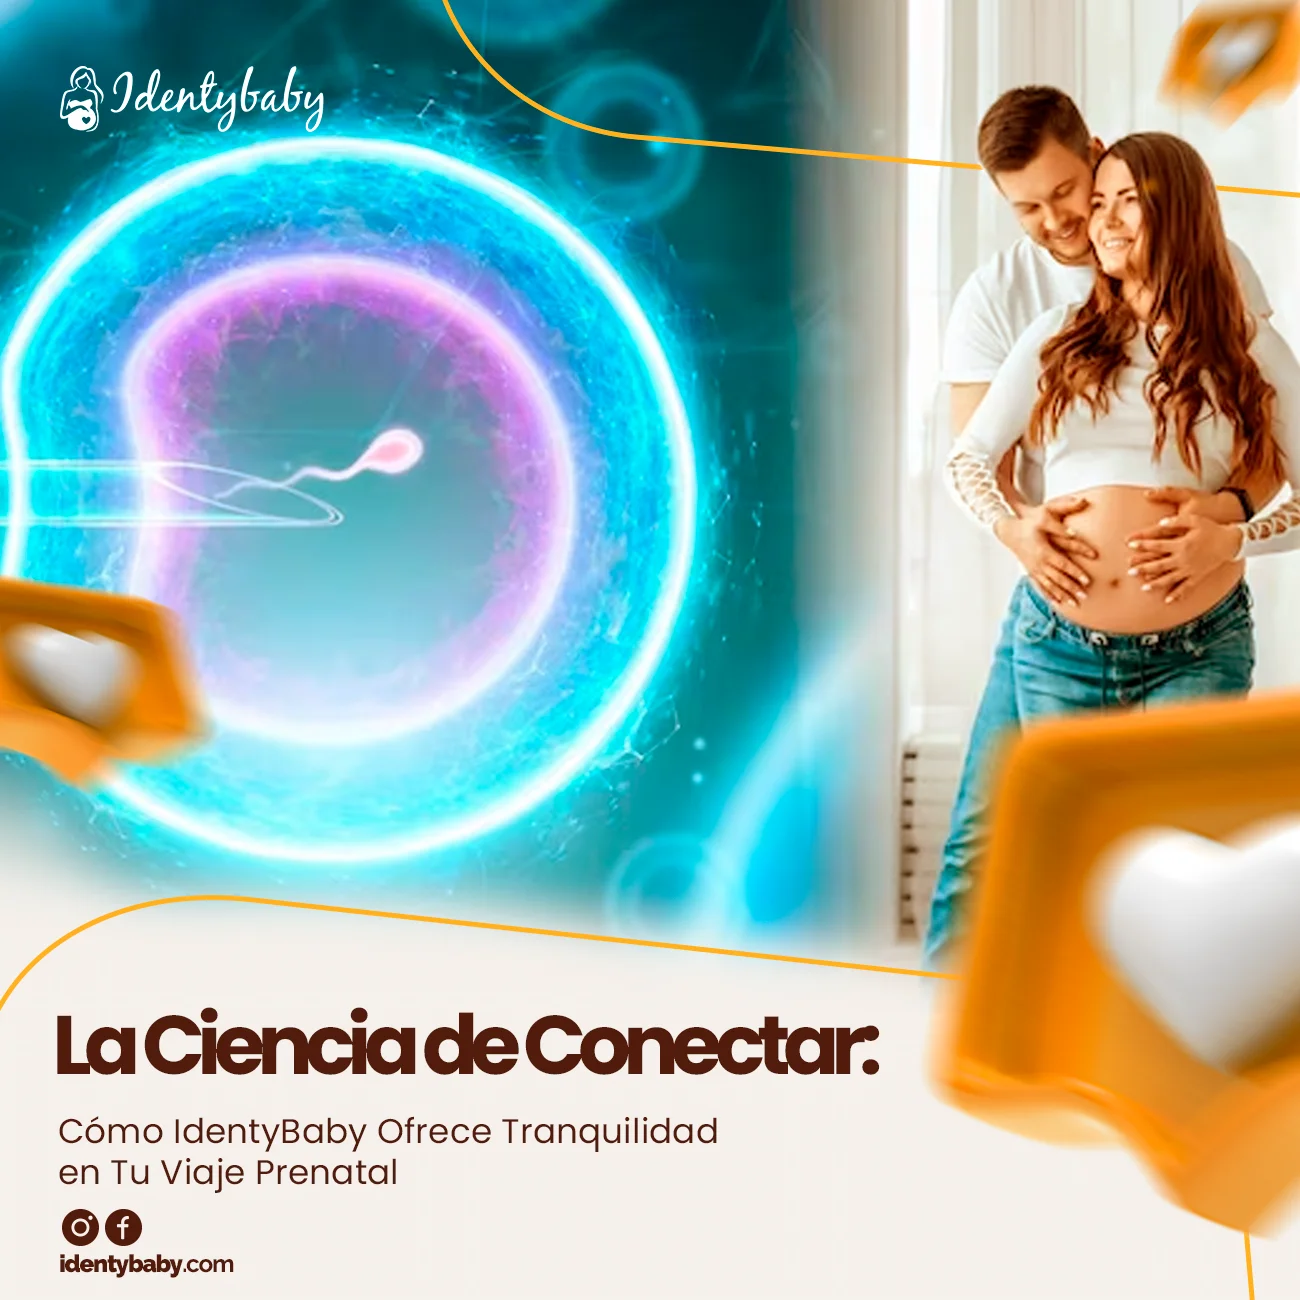 La Ciencia de Conectar: Cómo IdentyBaby Ofrece Tranquilidad en Tu Viaje Prenatal